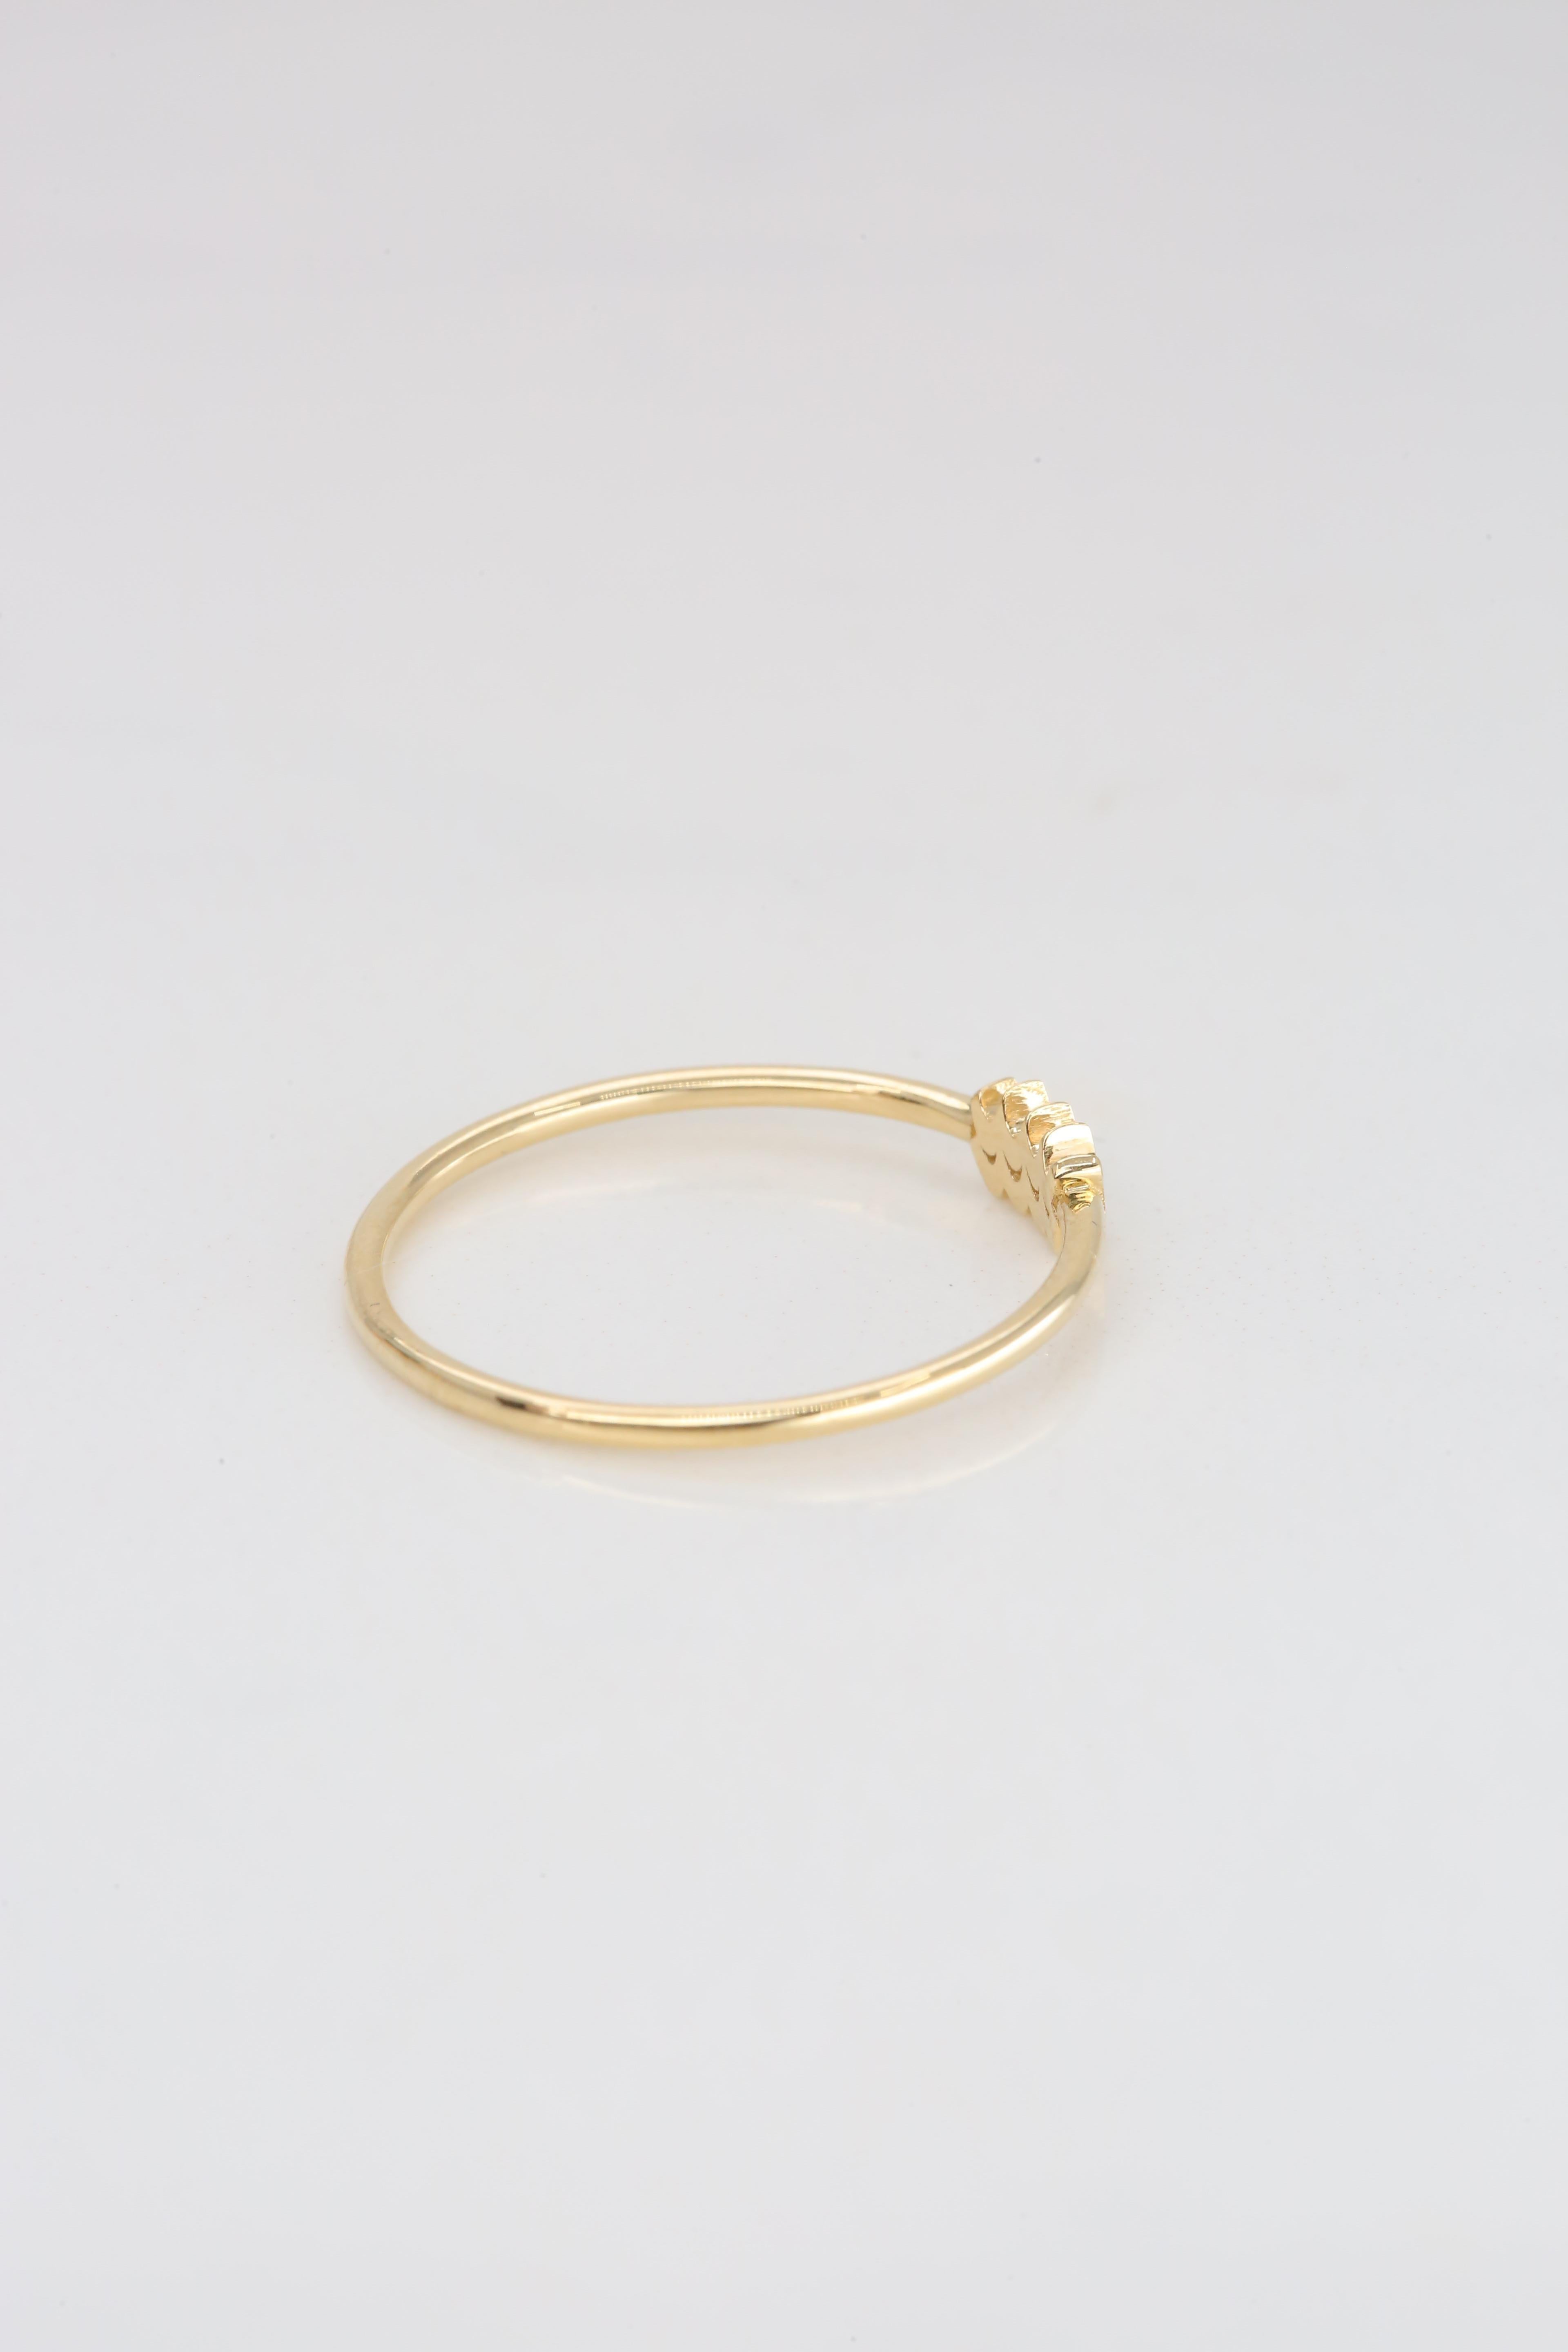 For Sale:  14K Gold Aquarius Ring, Aquarius Sign Gold Ring 7